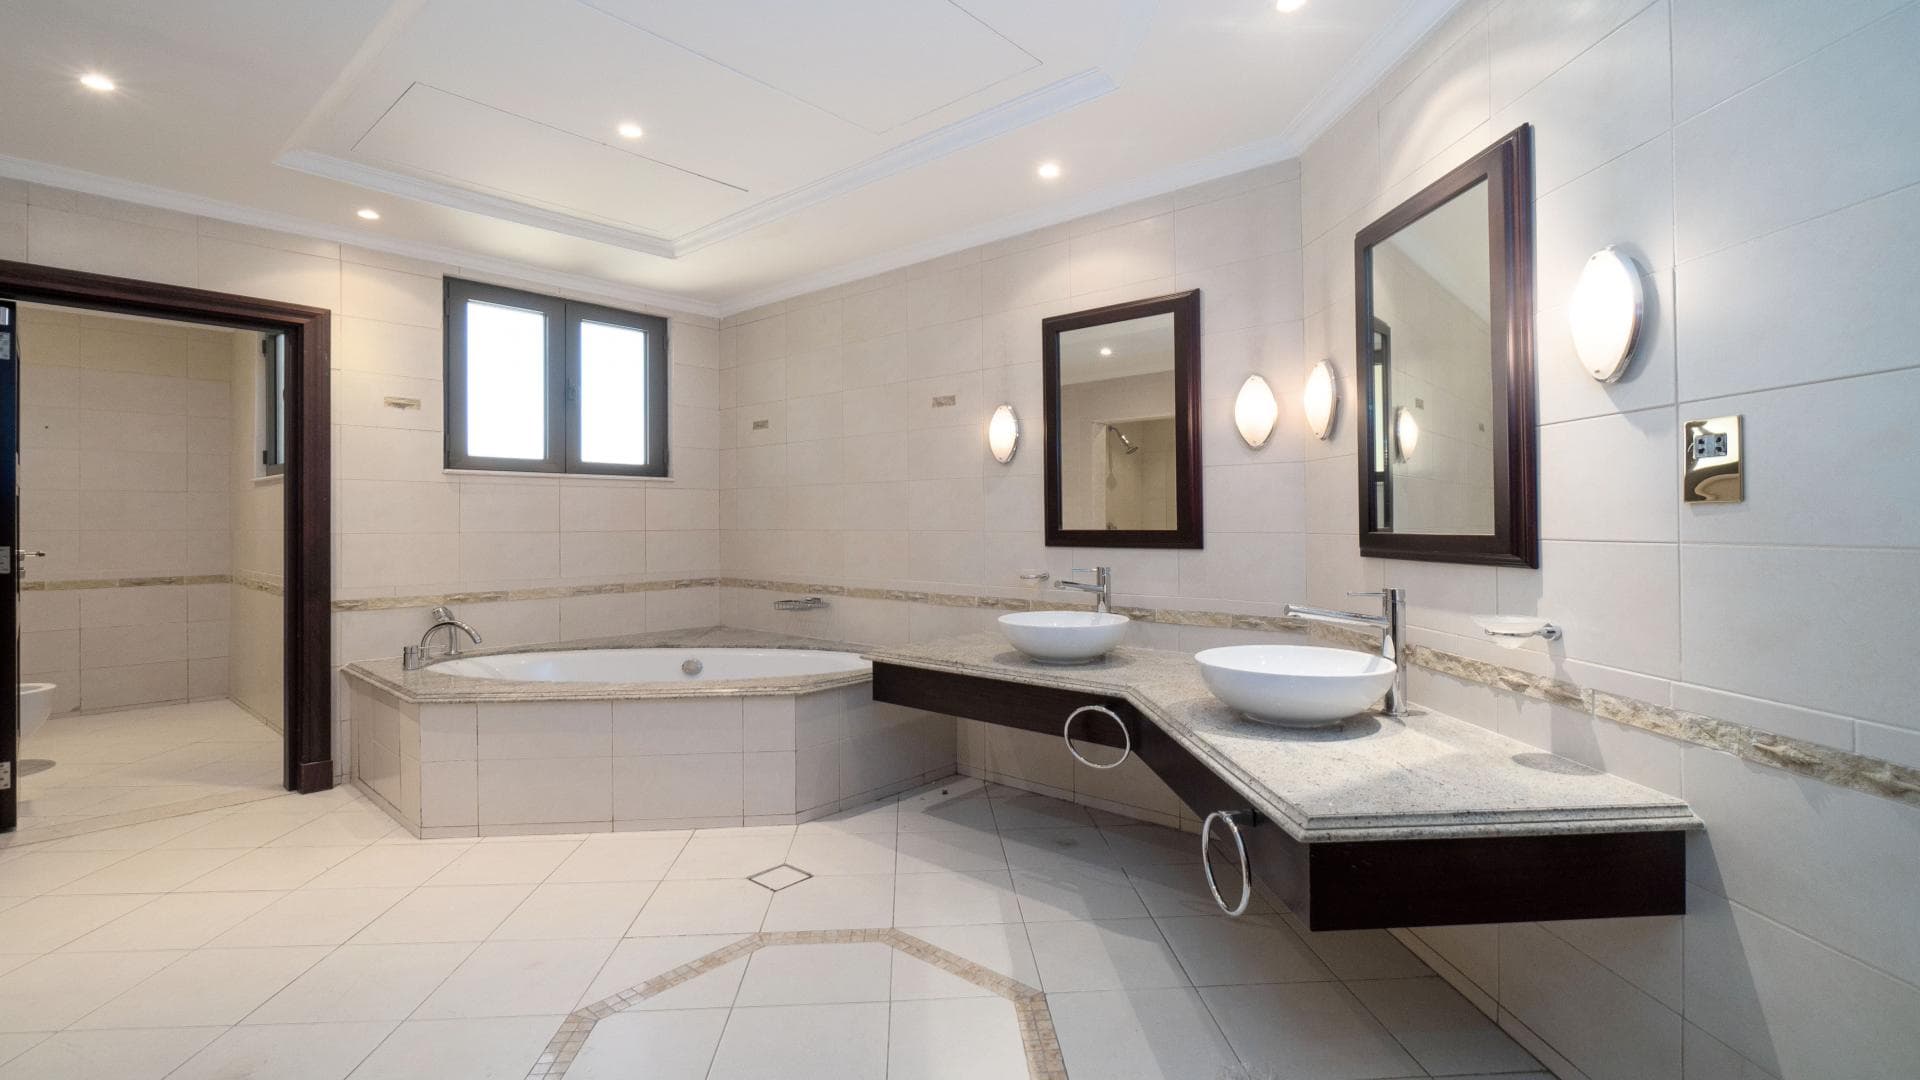 5 Bedroom Villa For Rent Mughal Lp36657 20cc1f908af00000.jpg